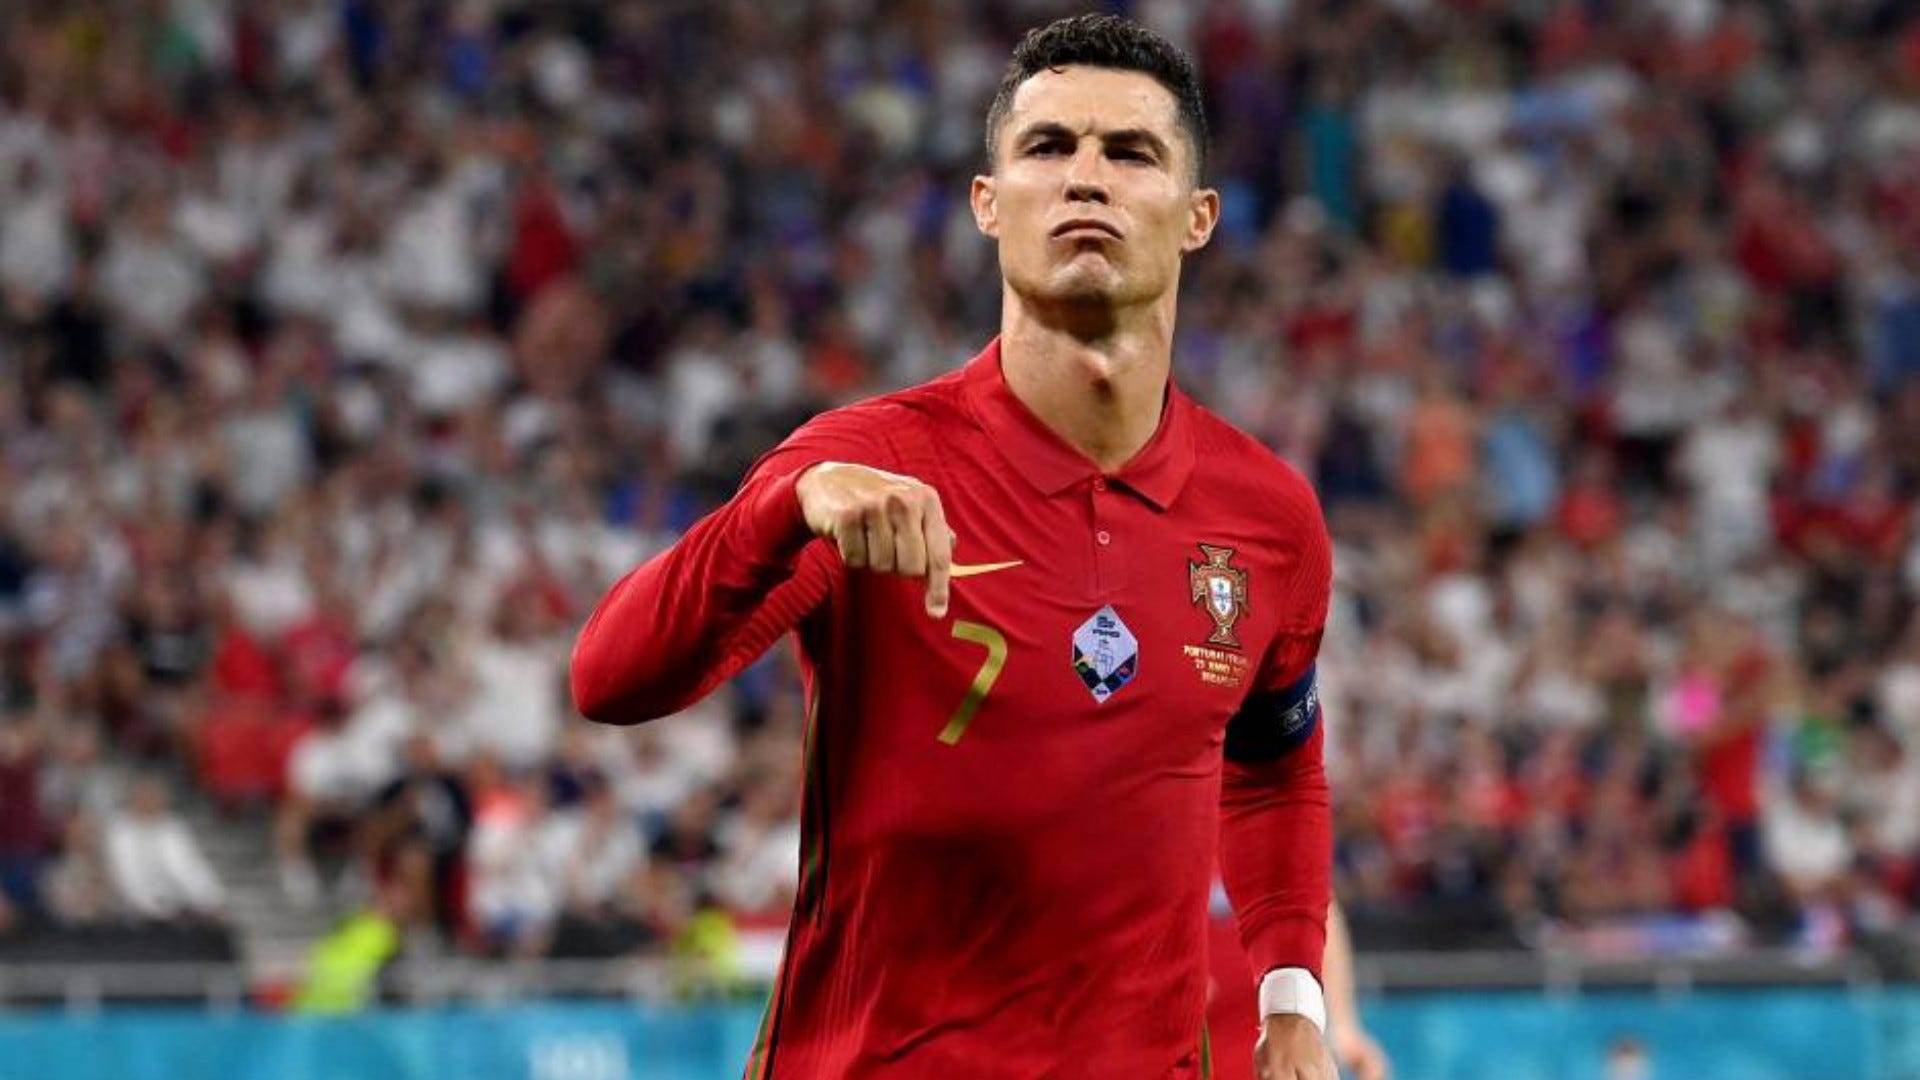 Cristiano Ronaldo: Bức ảnh này sẽ khiến trái tim bạn nóng rực khi Cristiano Ronaldo xuất hiện. Vị cầu thủ nổi tiếng này không chỉ là một huyền thoại của đội tuyển Bồ Đào Nha, mà còn là idôl của hàng triệu người trên khắp thế giới.